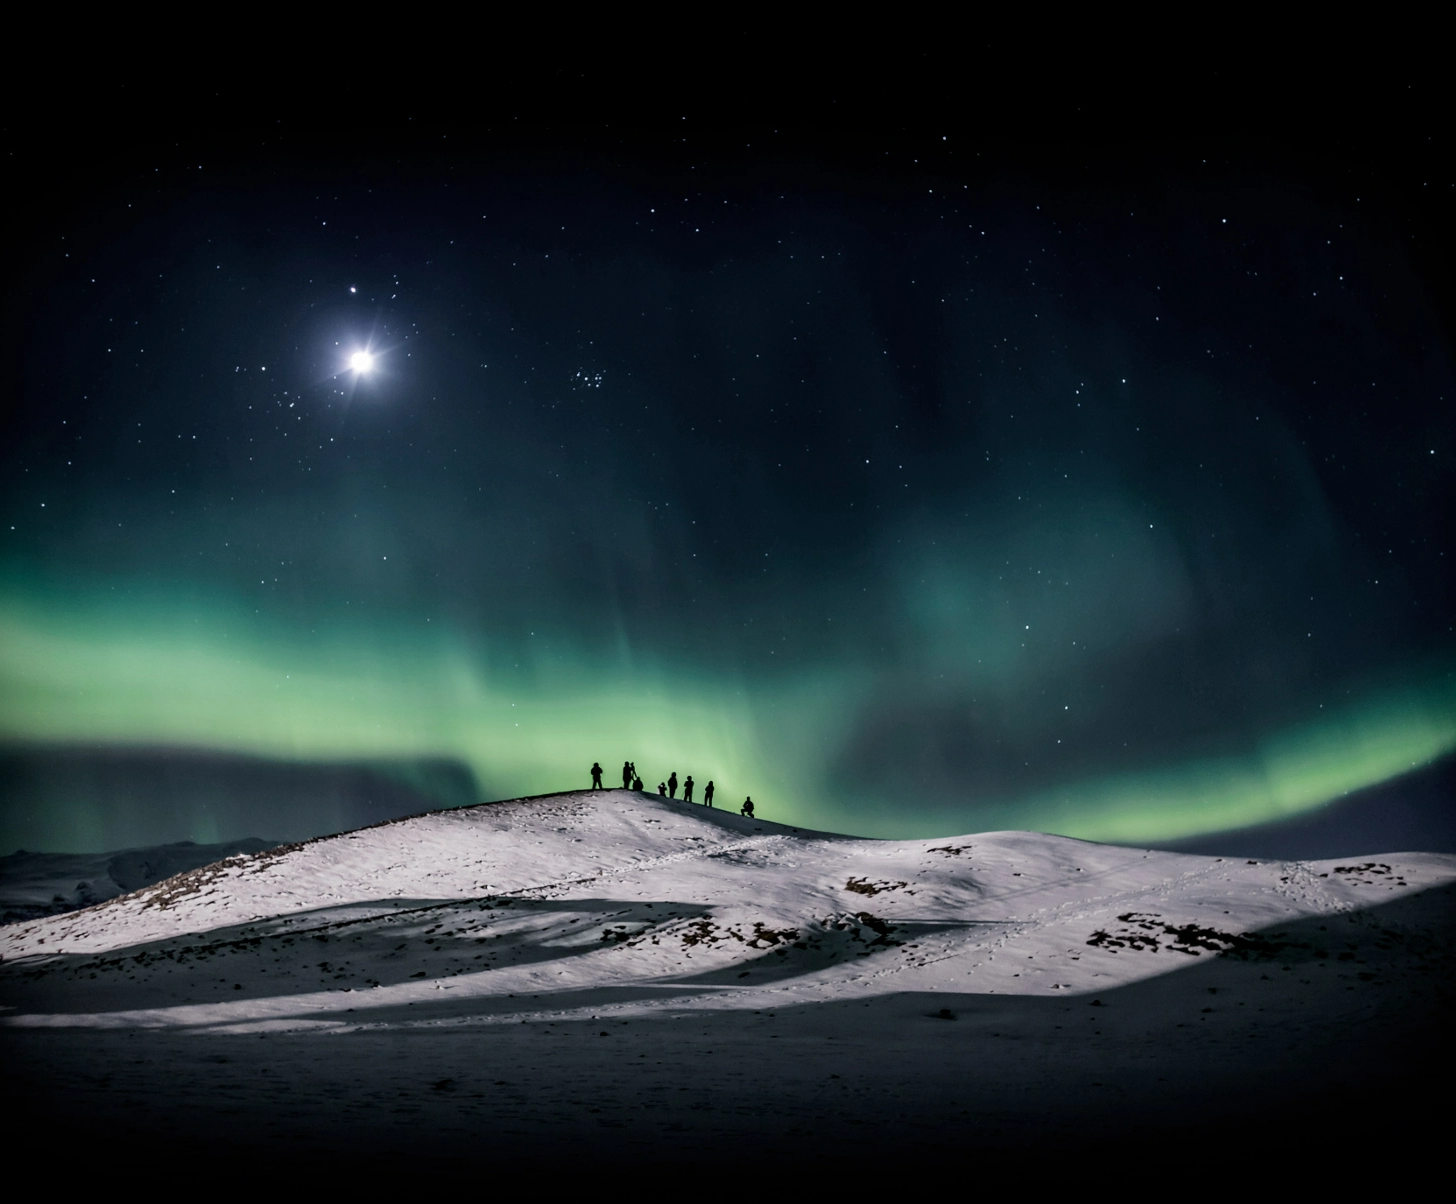 #BradescoAcessivel #ParaTodoMundoVer: Um grupo de pessoas em cima de um pequeno
    morro nevado forma a silhueta, ao observarem o céu com uma aurora bureal, presente
    nos polos do globo terrestre.